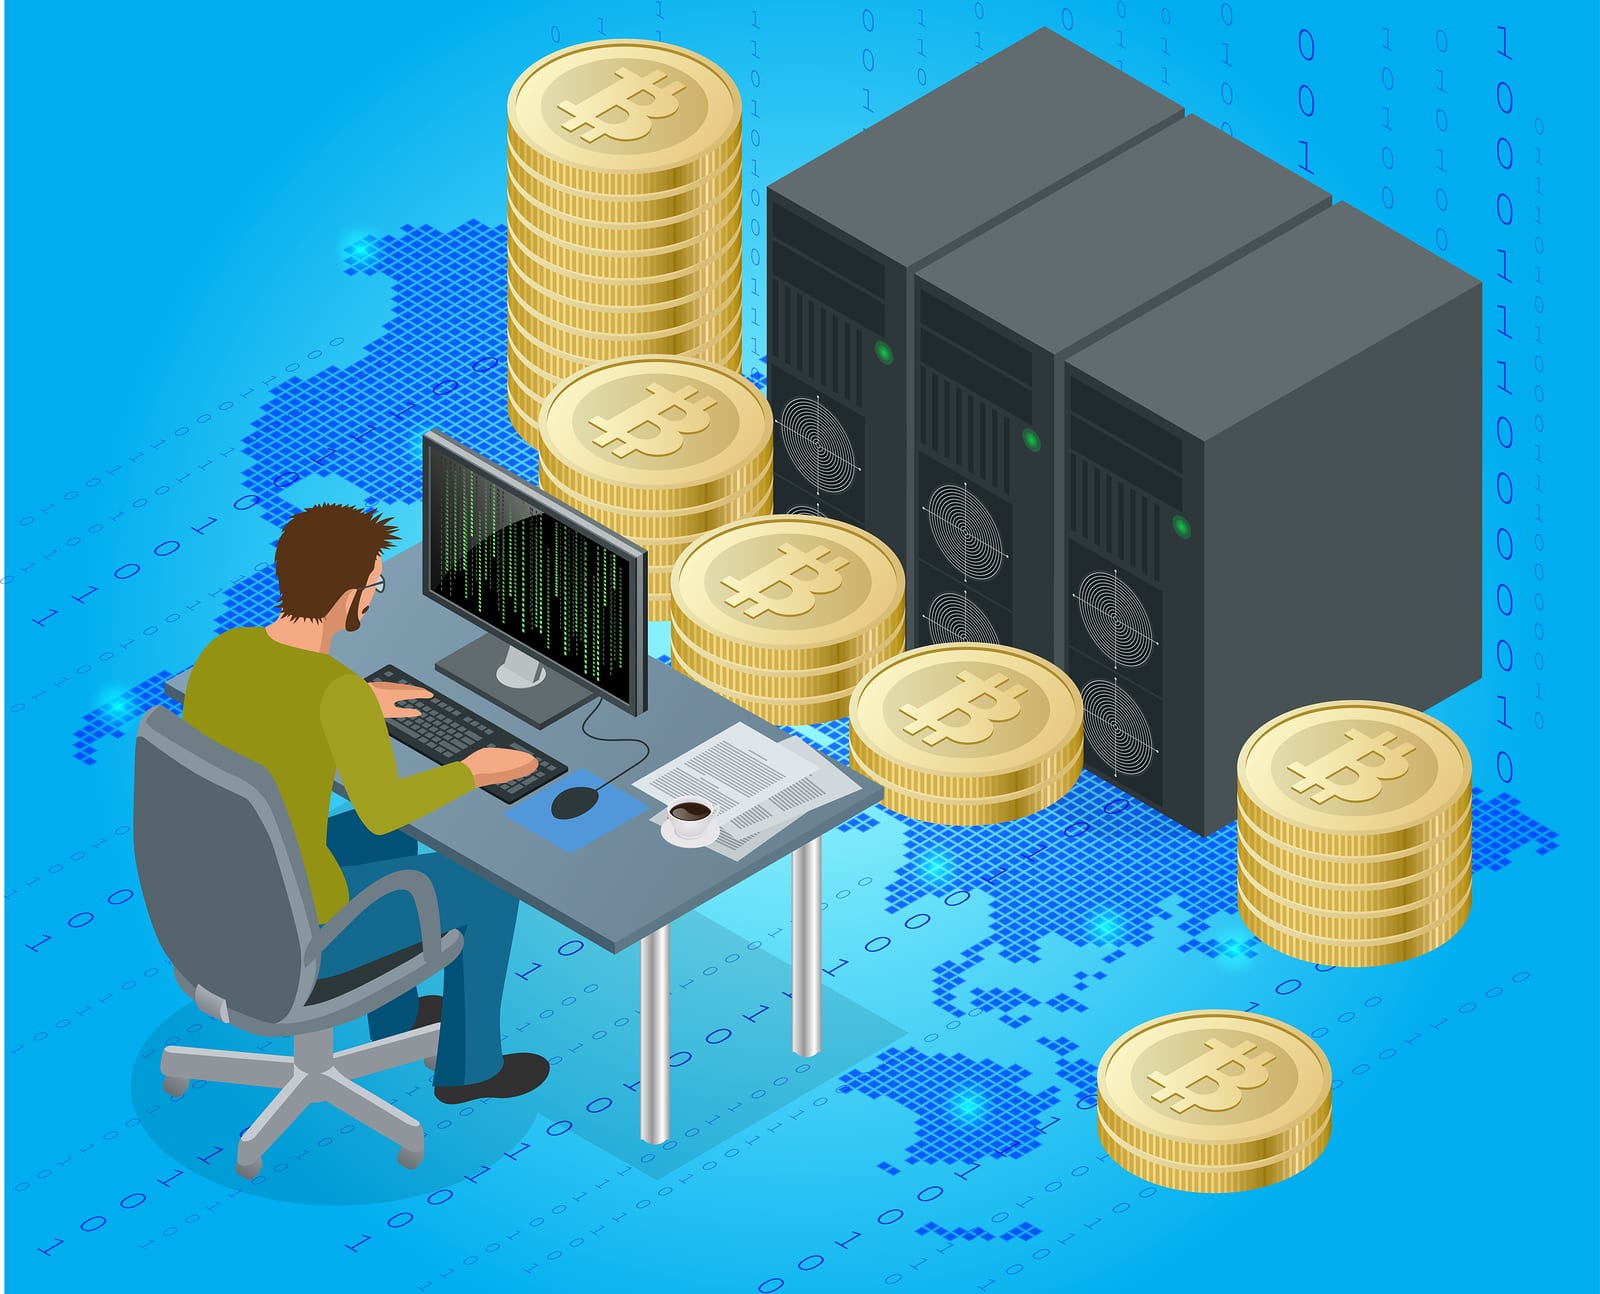 Btc origin pay for dedicated server with bitcoin